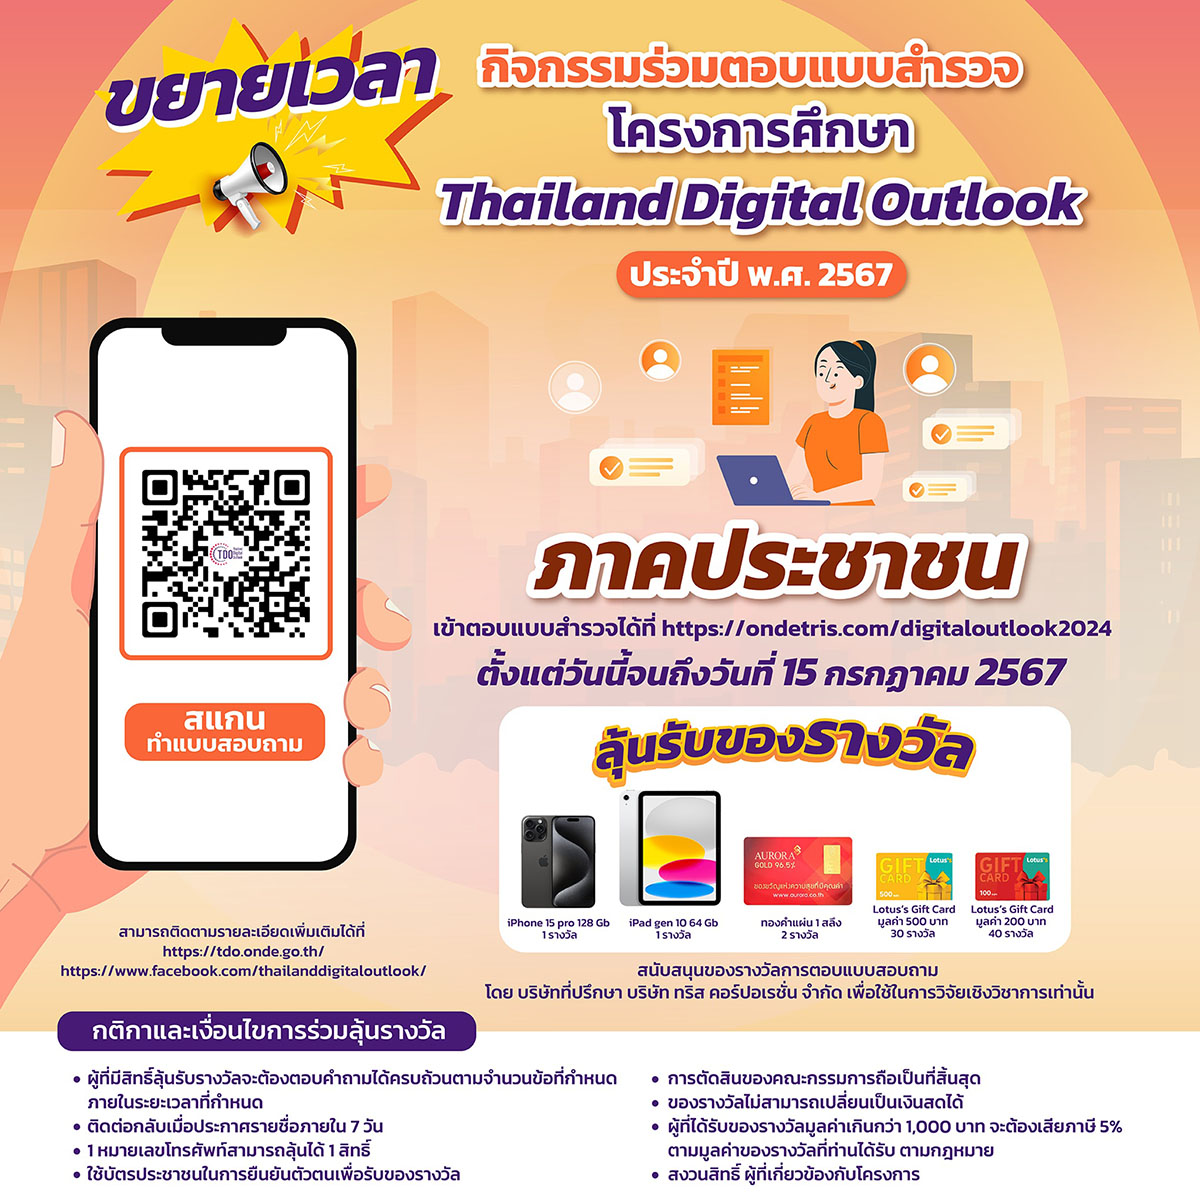 สดช. - ทริส ปลื้ม ประชาชนสนใจร่วมตอบแบบสำรวจ Thailand Digital Outlook ปี 2567 คาดได้กว่า 1.5 แสนแบบสำรวจ พร้อมนำข้อมูลพัฒนาดิจิทัลประเทศ